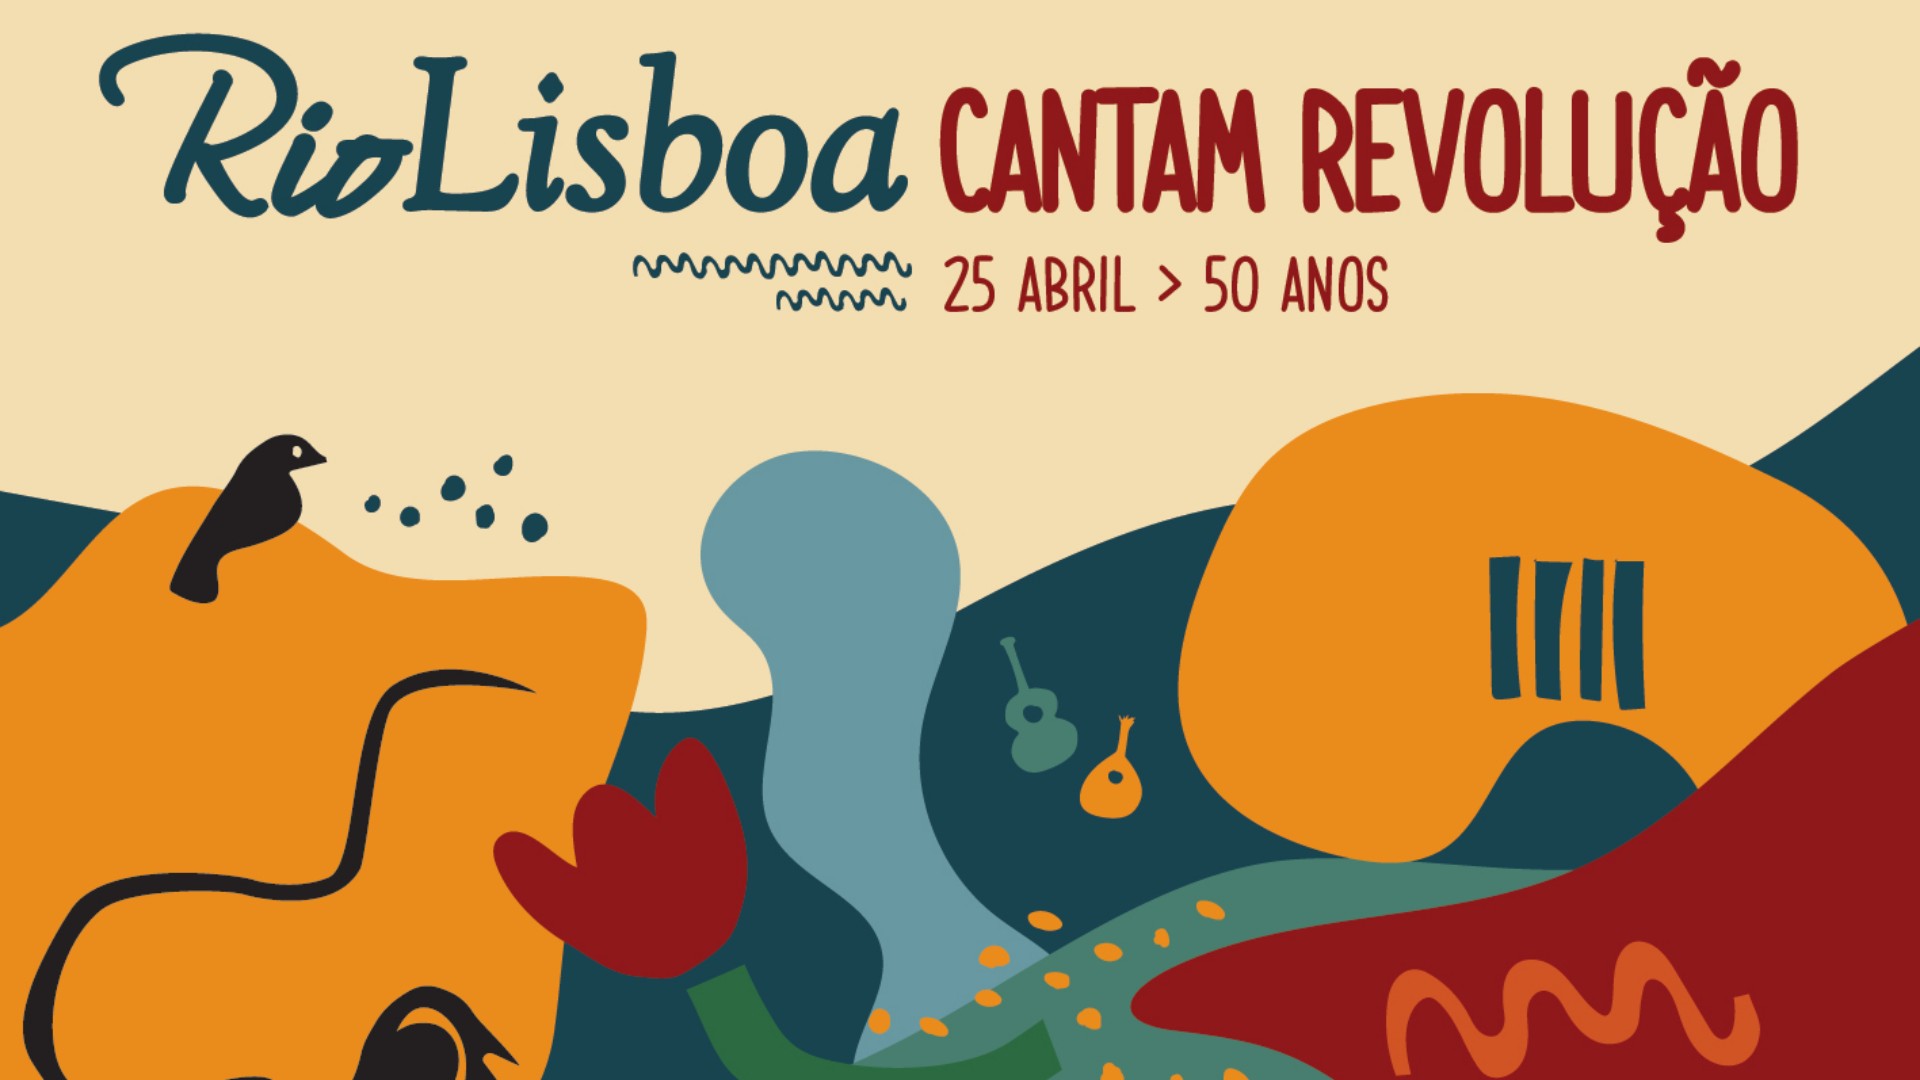 Capa do Evento Rio Lisboa Cantam Revolução